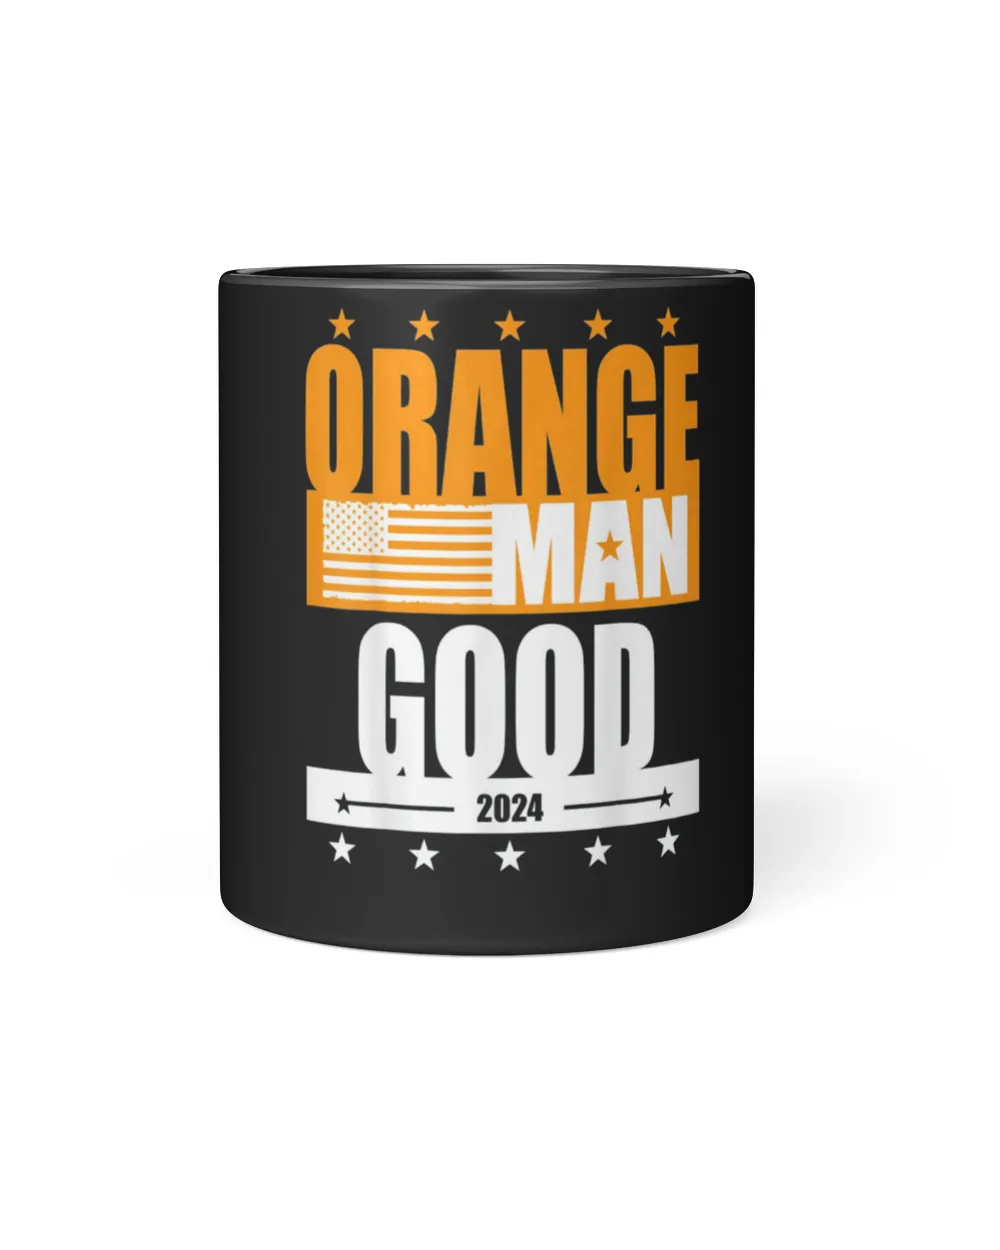 Orange Man Good Meme – Patriotic American T-Shirt